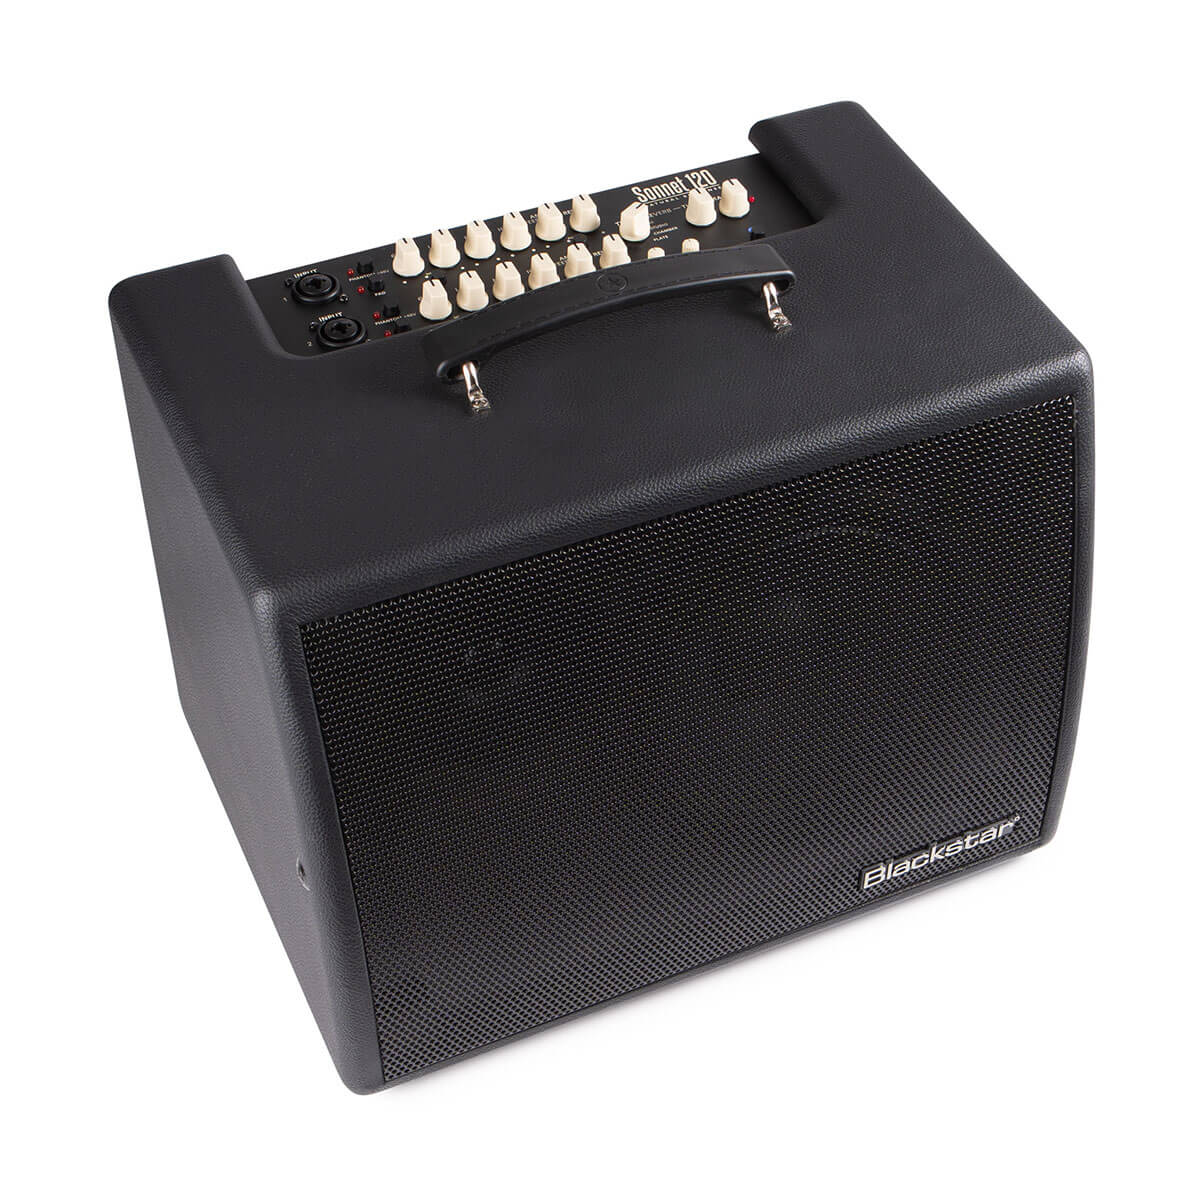 Blackstar Sonnet 120 Acoustic Amplifier - Each - Black